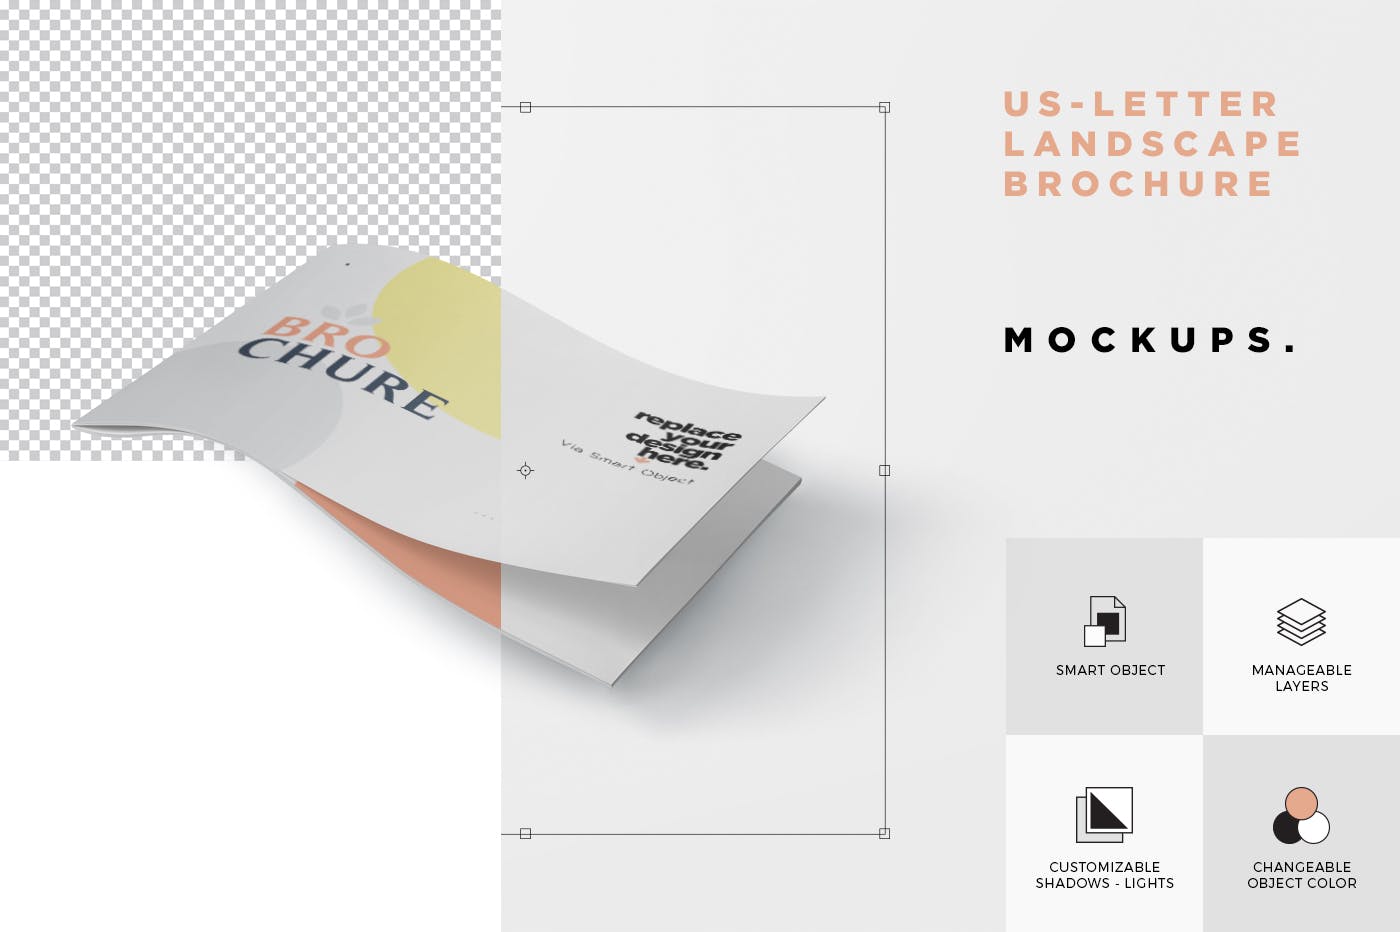 美国信纸尺寸横版杂志印刷效果图样机第一素材精选 US Letter Landscape Brochure – Magazine Mockup set插图(4)